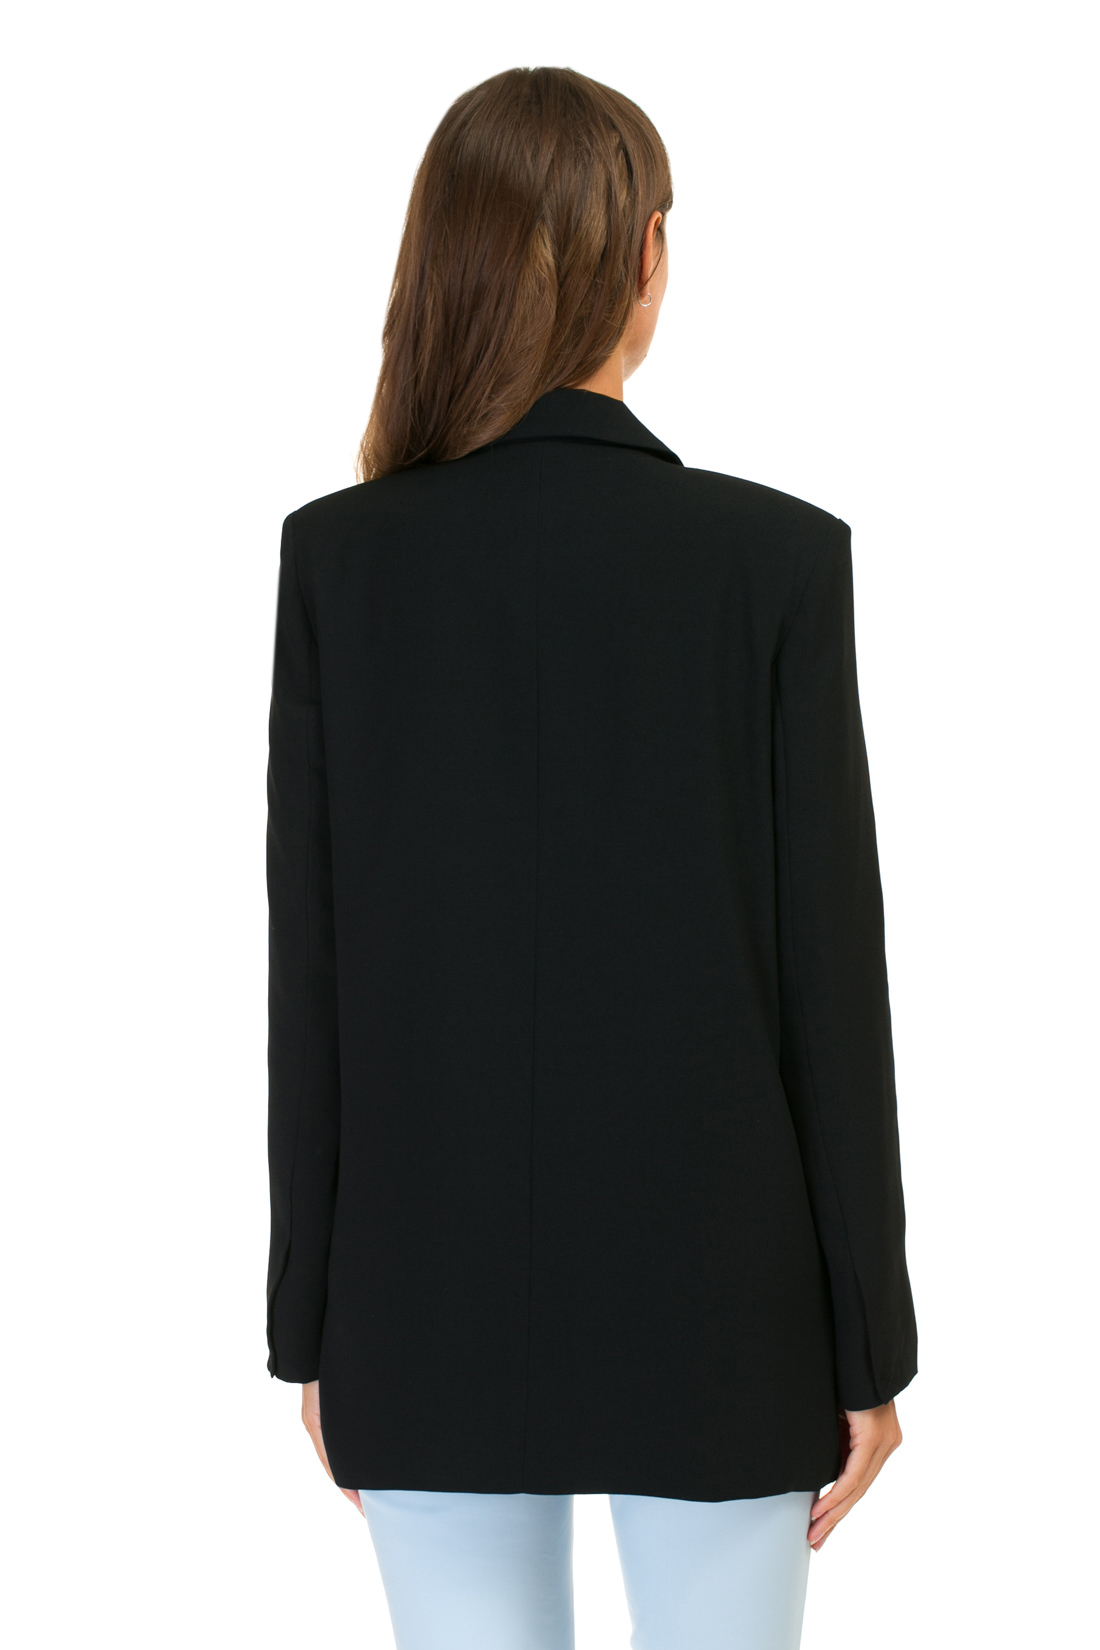 Удлинённый пиджак (арт. baon B127004), размер XXL, цвет черный Удлинённый пиджак (арт. baon B127004) - фото 2